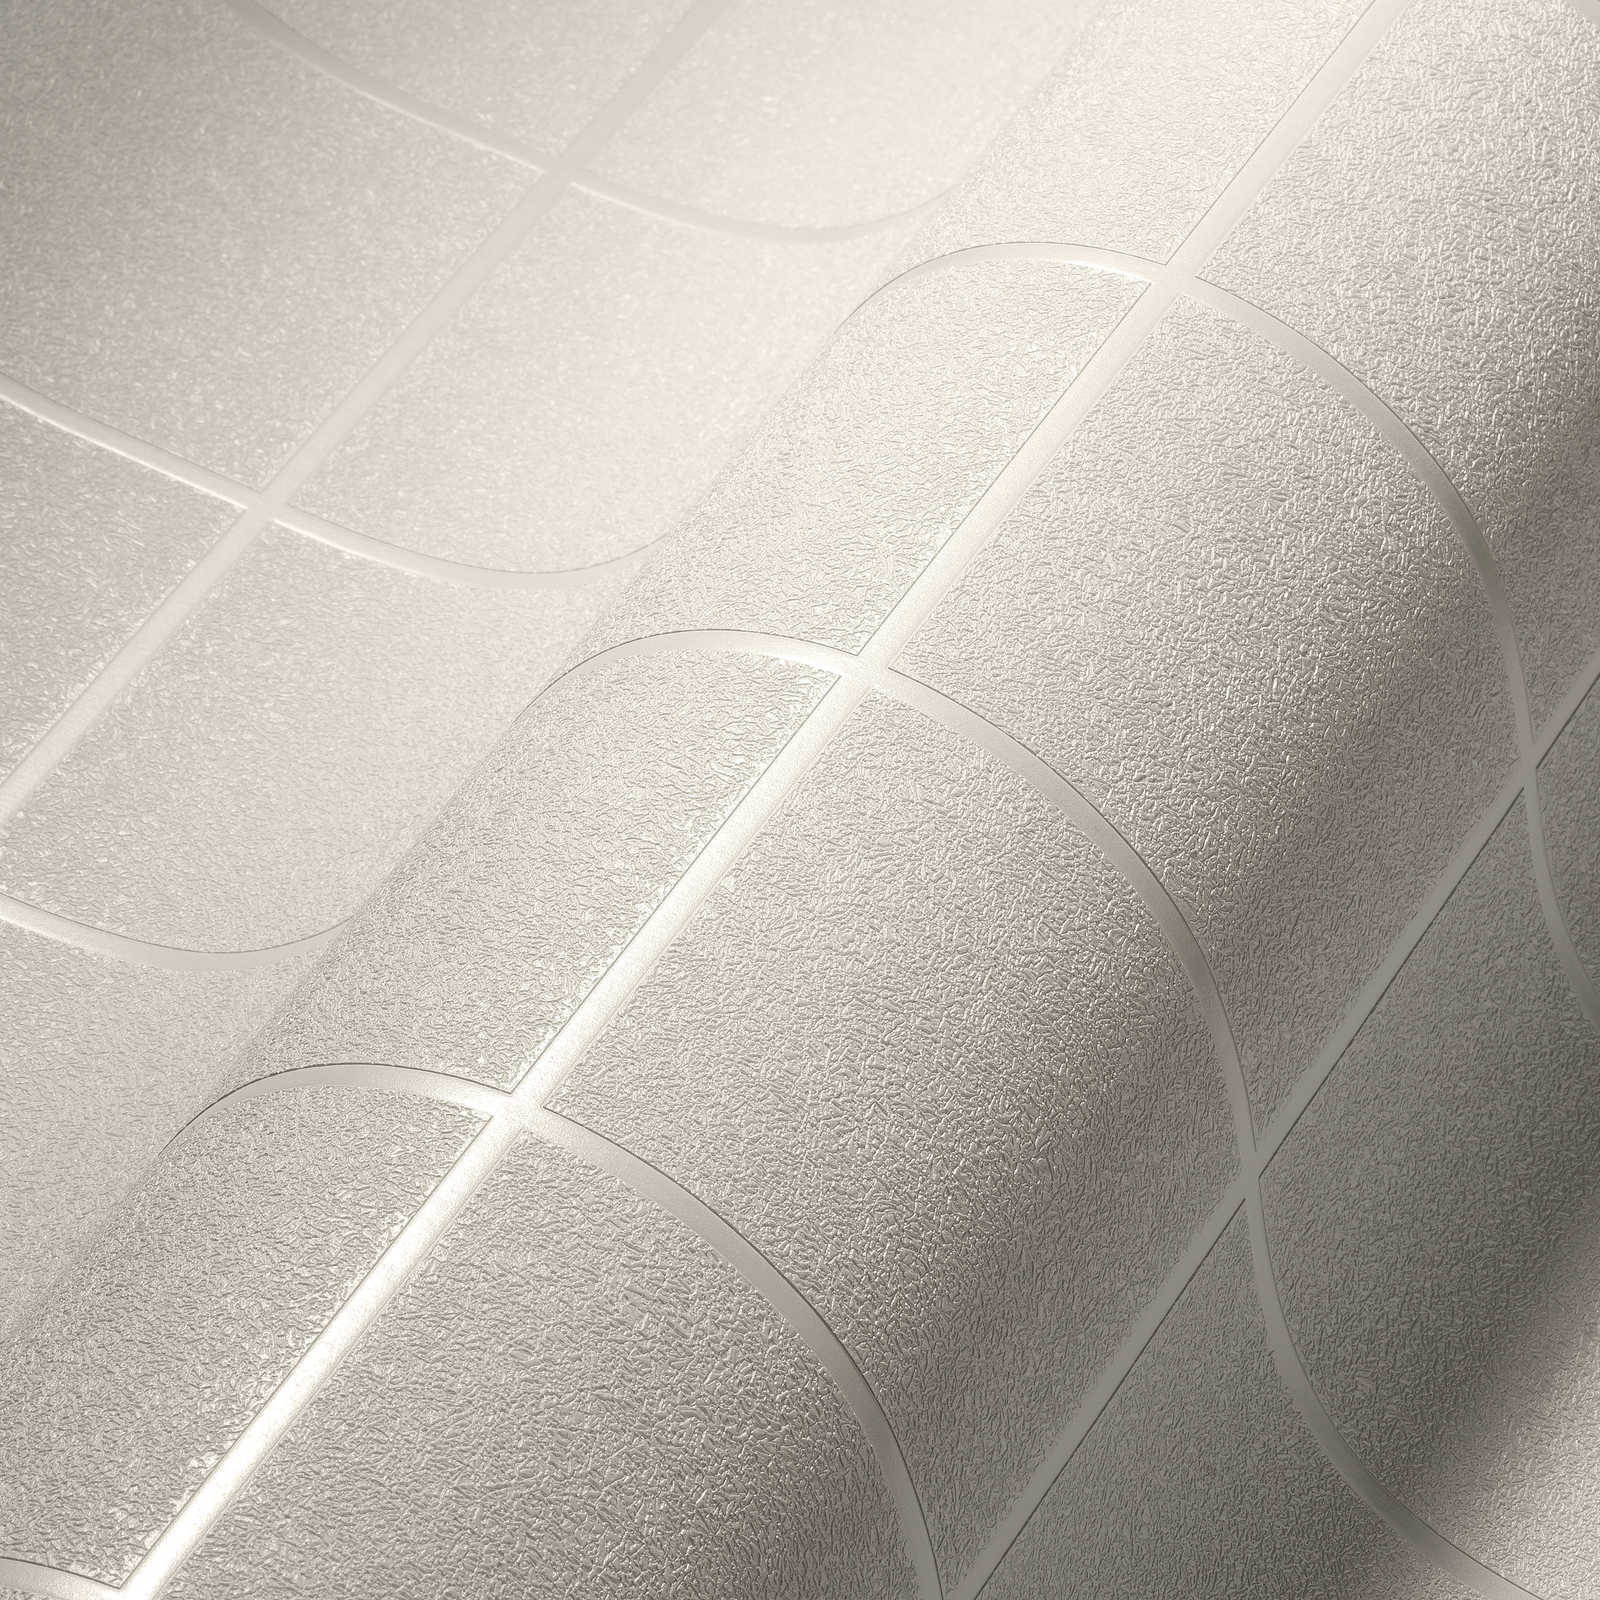             behang tegelpatroon, donkere voegen & 3D effect - zilver, wit
        